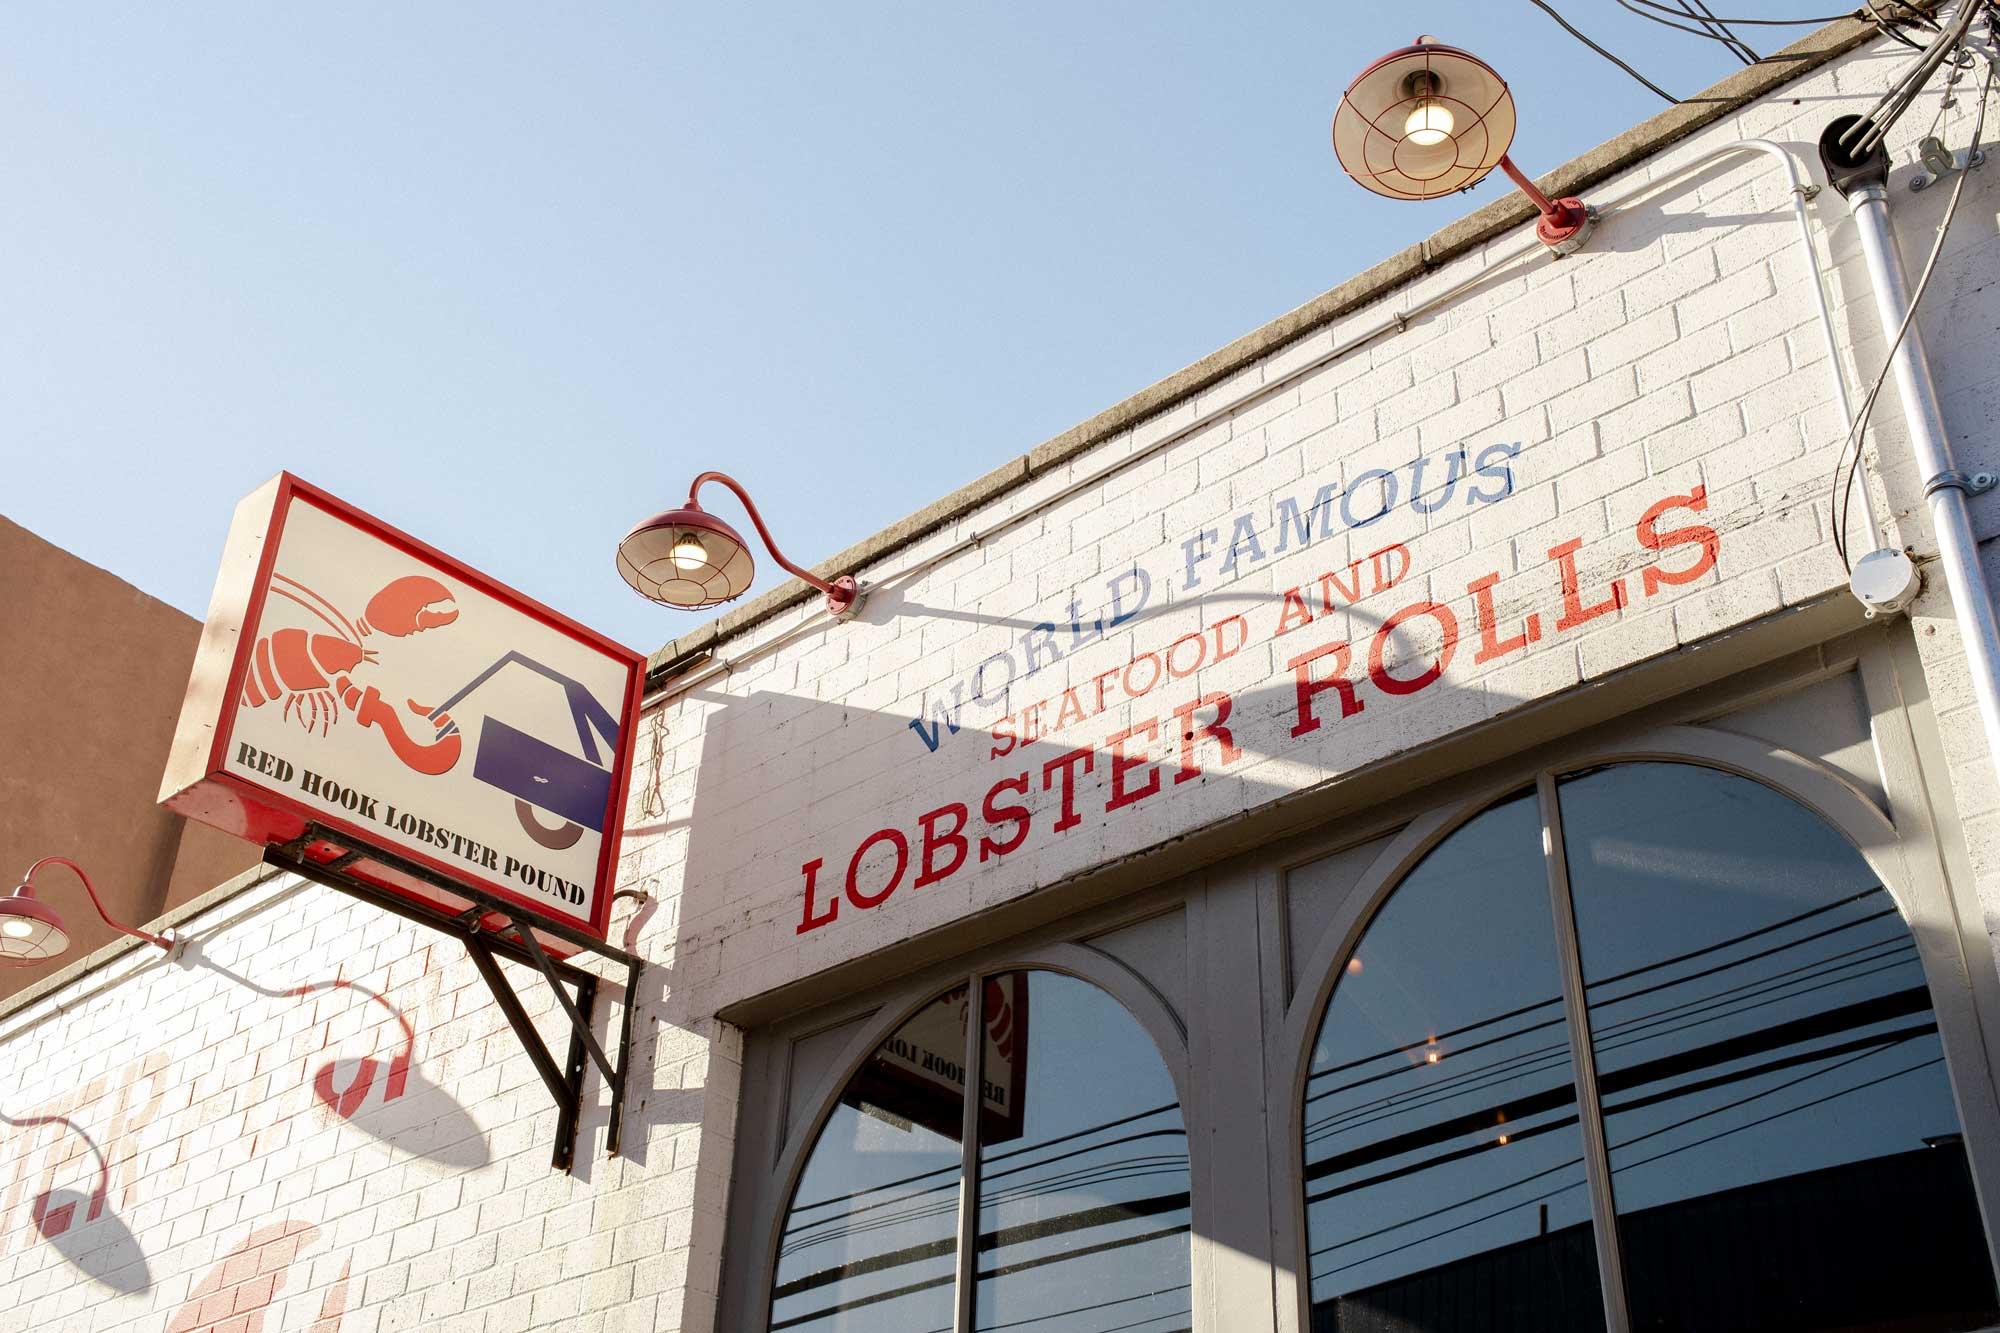  C'est ici que vous dégusterez les meilleurs "lobster rolls", une spécialité - un sandwich mou fourré au homard - de la Nouvelle Angleterre. Les vrais fans font des kilomètres pour les dévorer. 